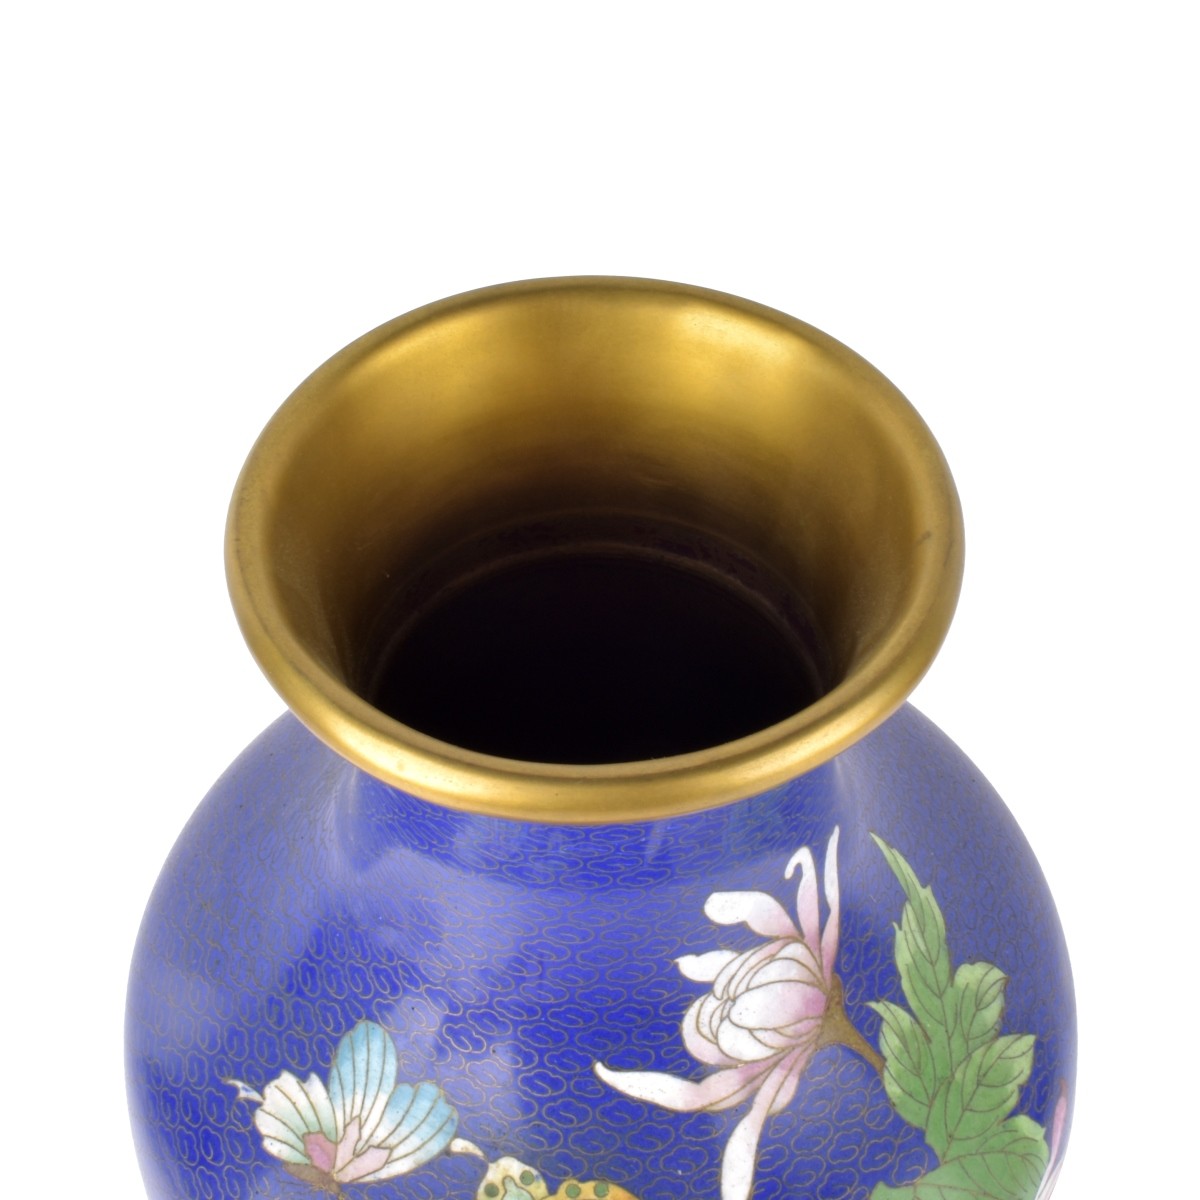 Chinese Cloisonne Vase